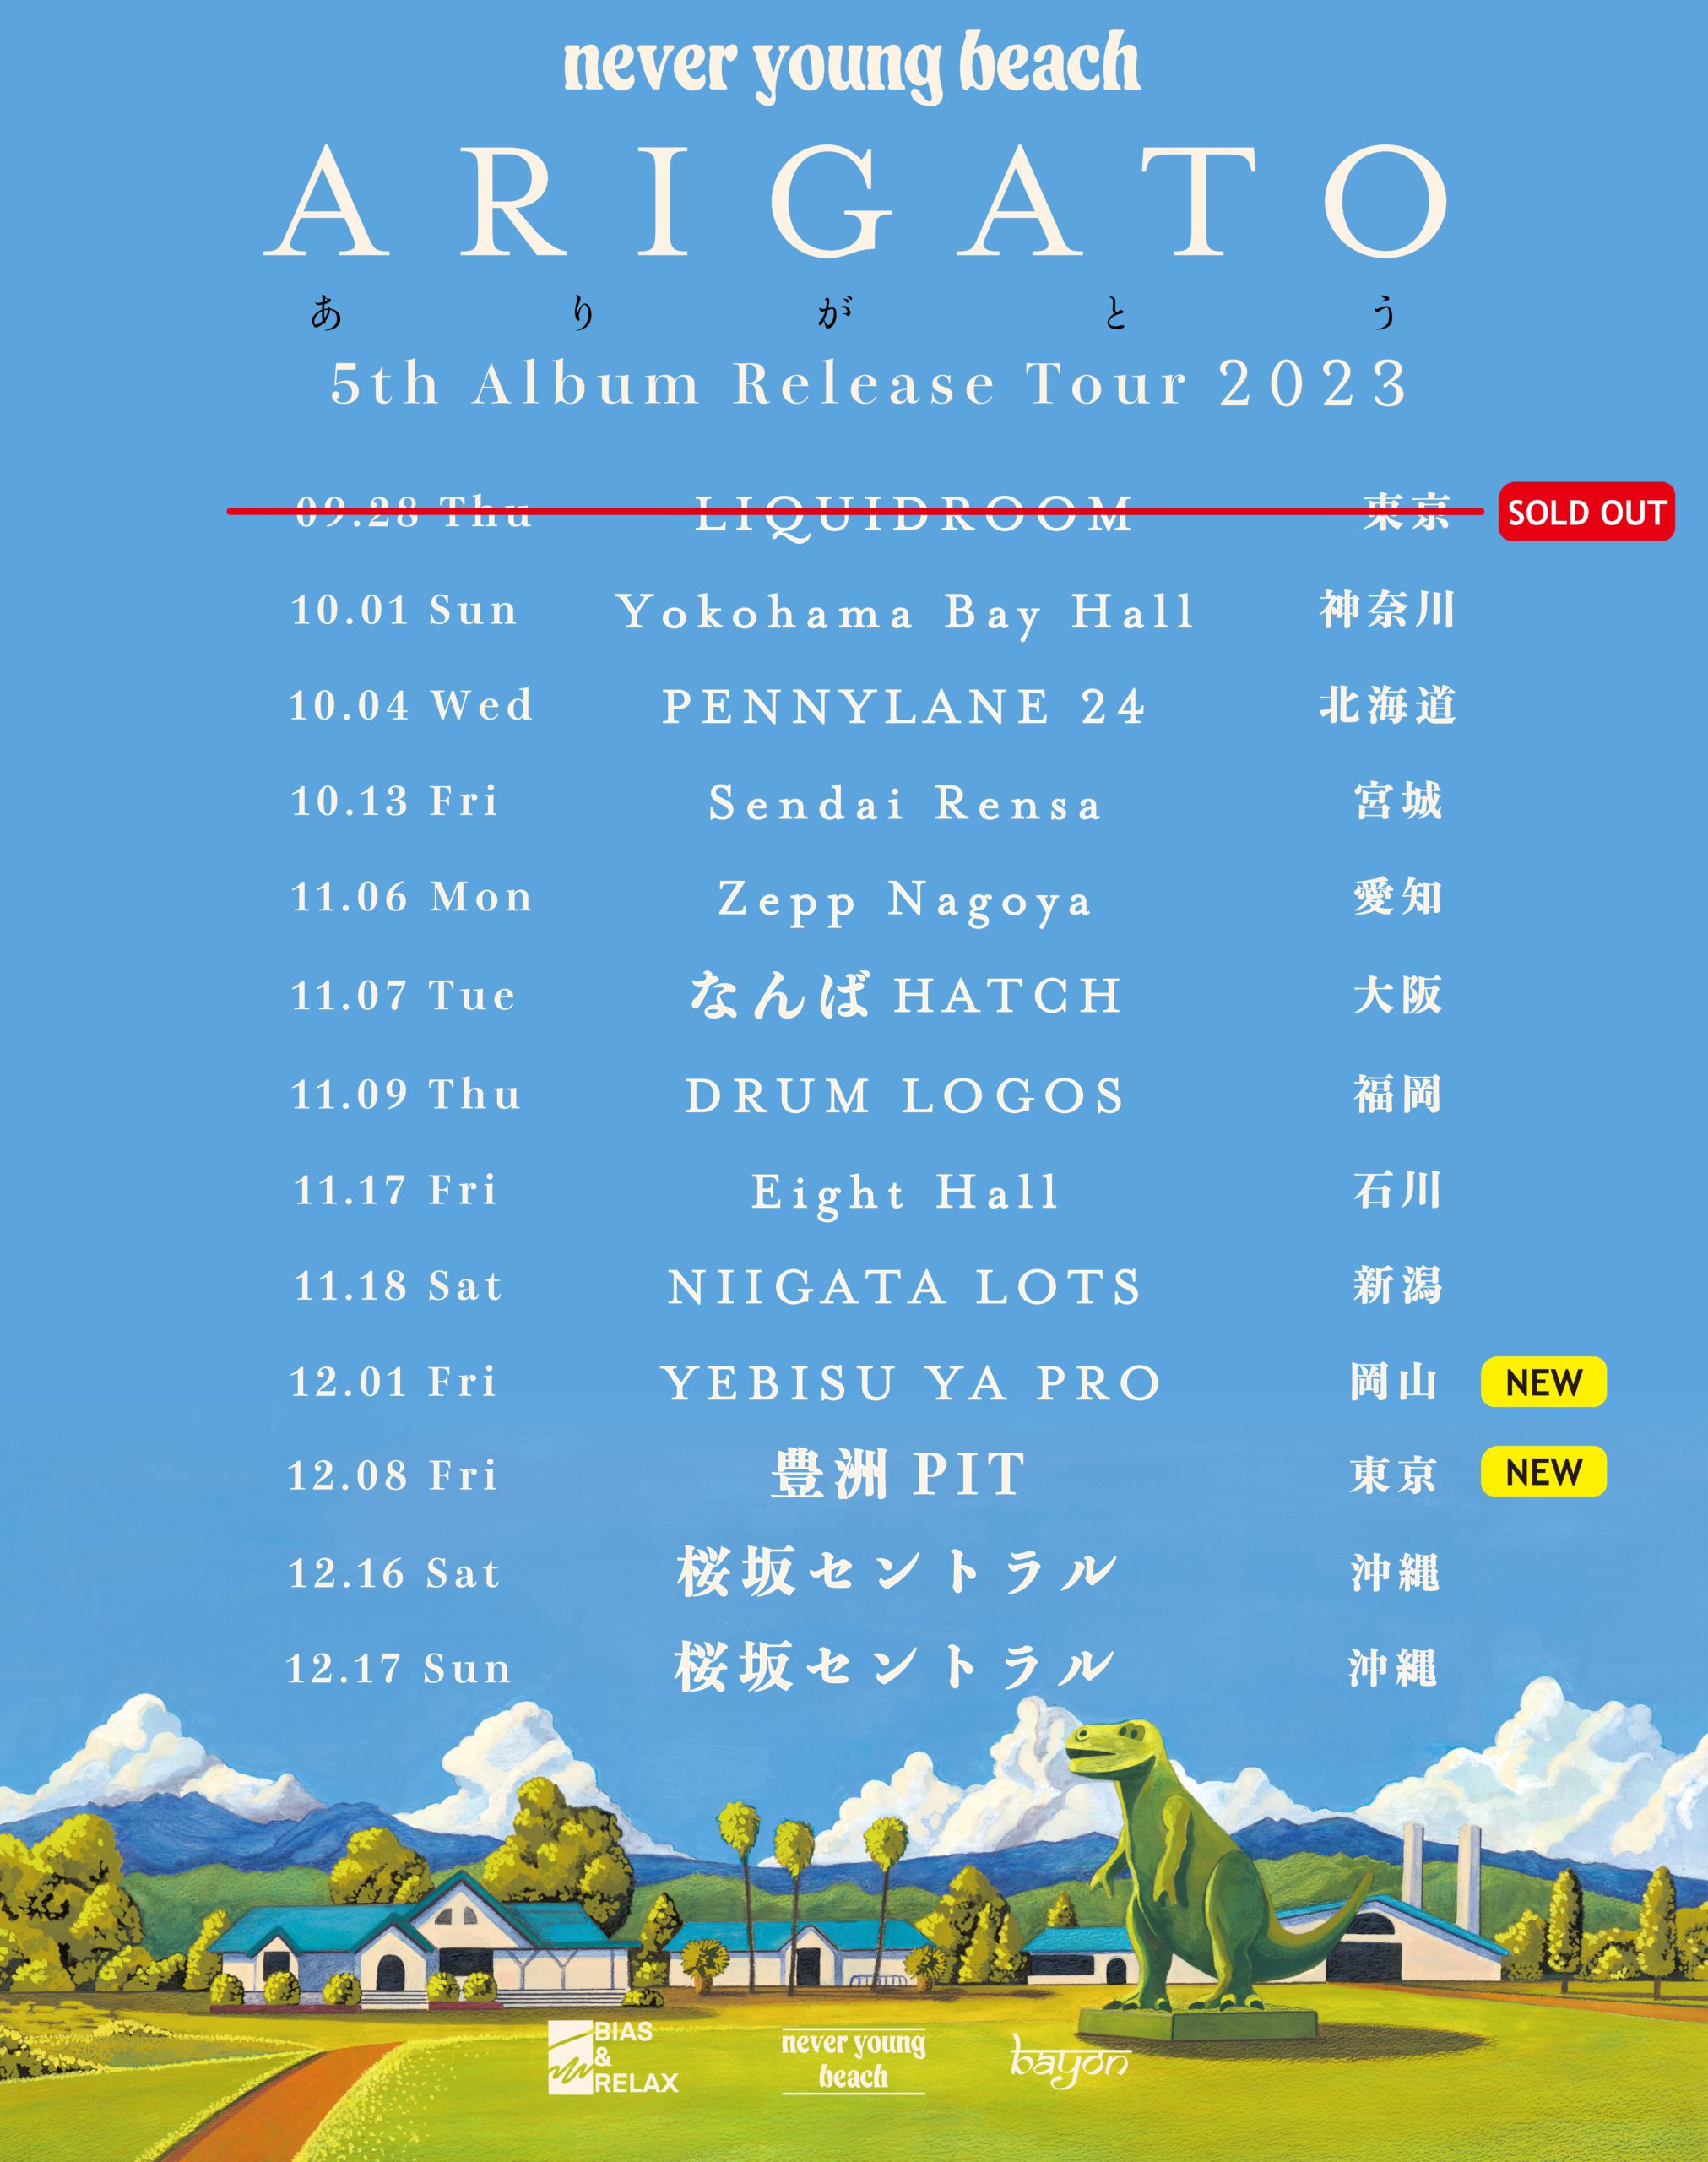 5th Album “ありがとう” Release Tour 東京 / 岡山公演の追加が決定 